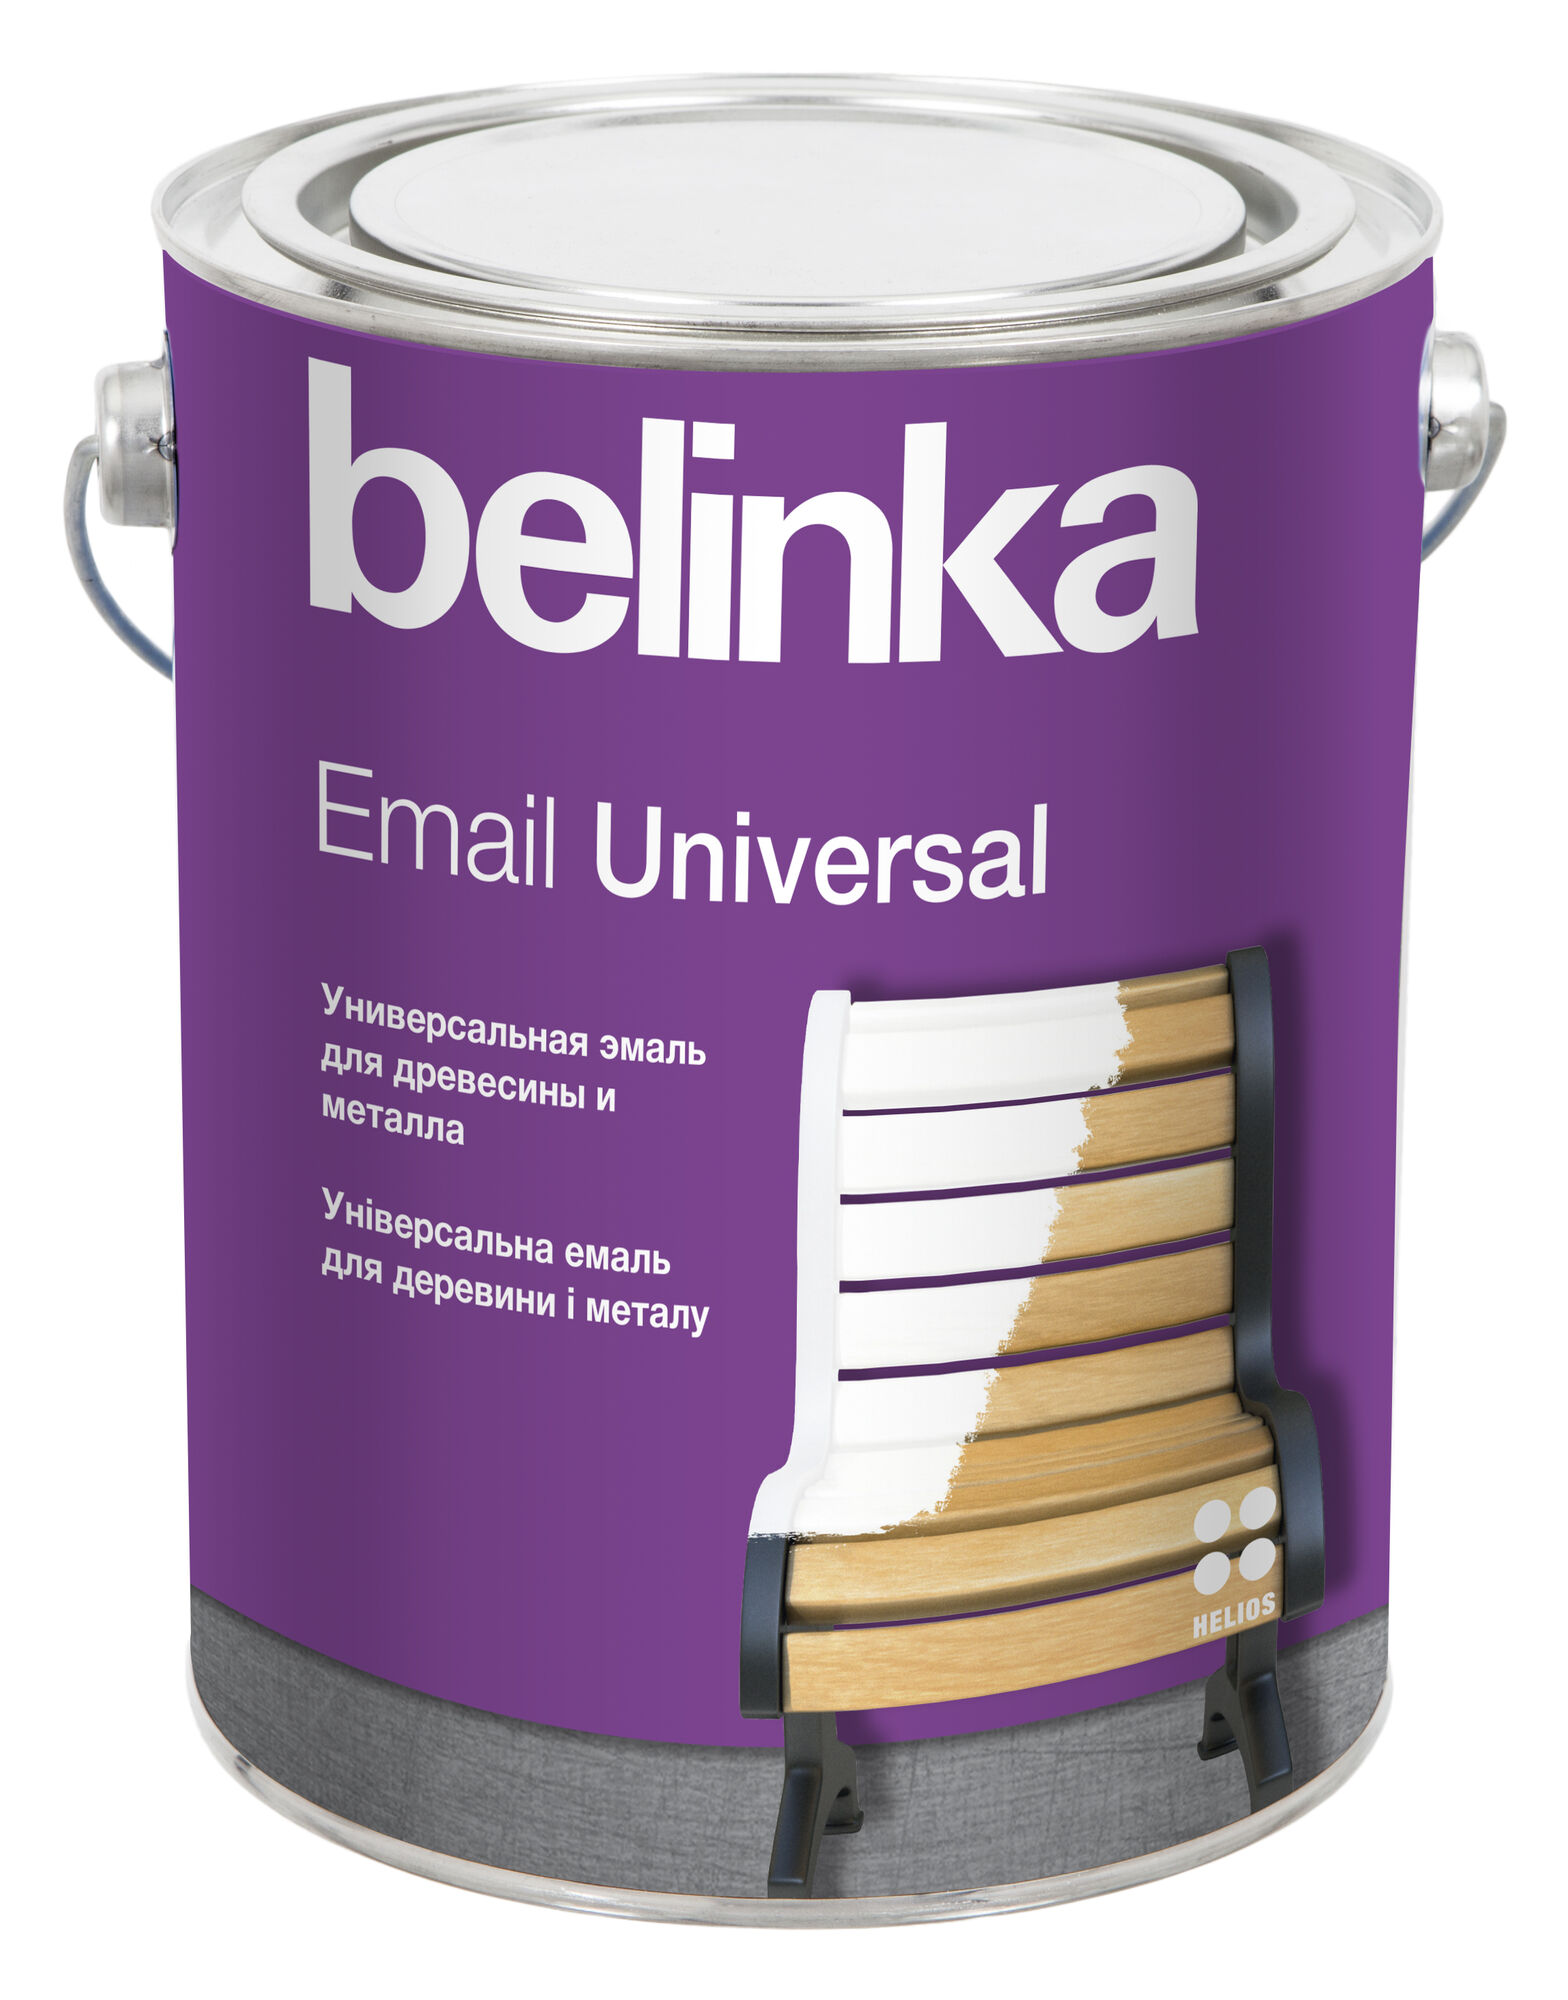 Эмаль универсальная Email Universal Belinka B3 2,7 л Глянцевая